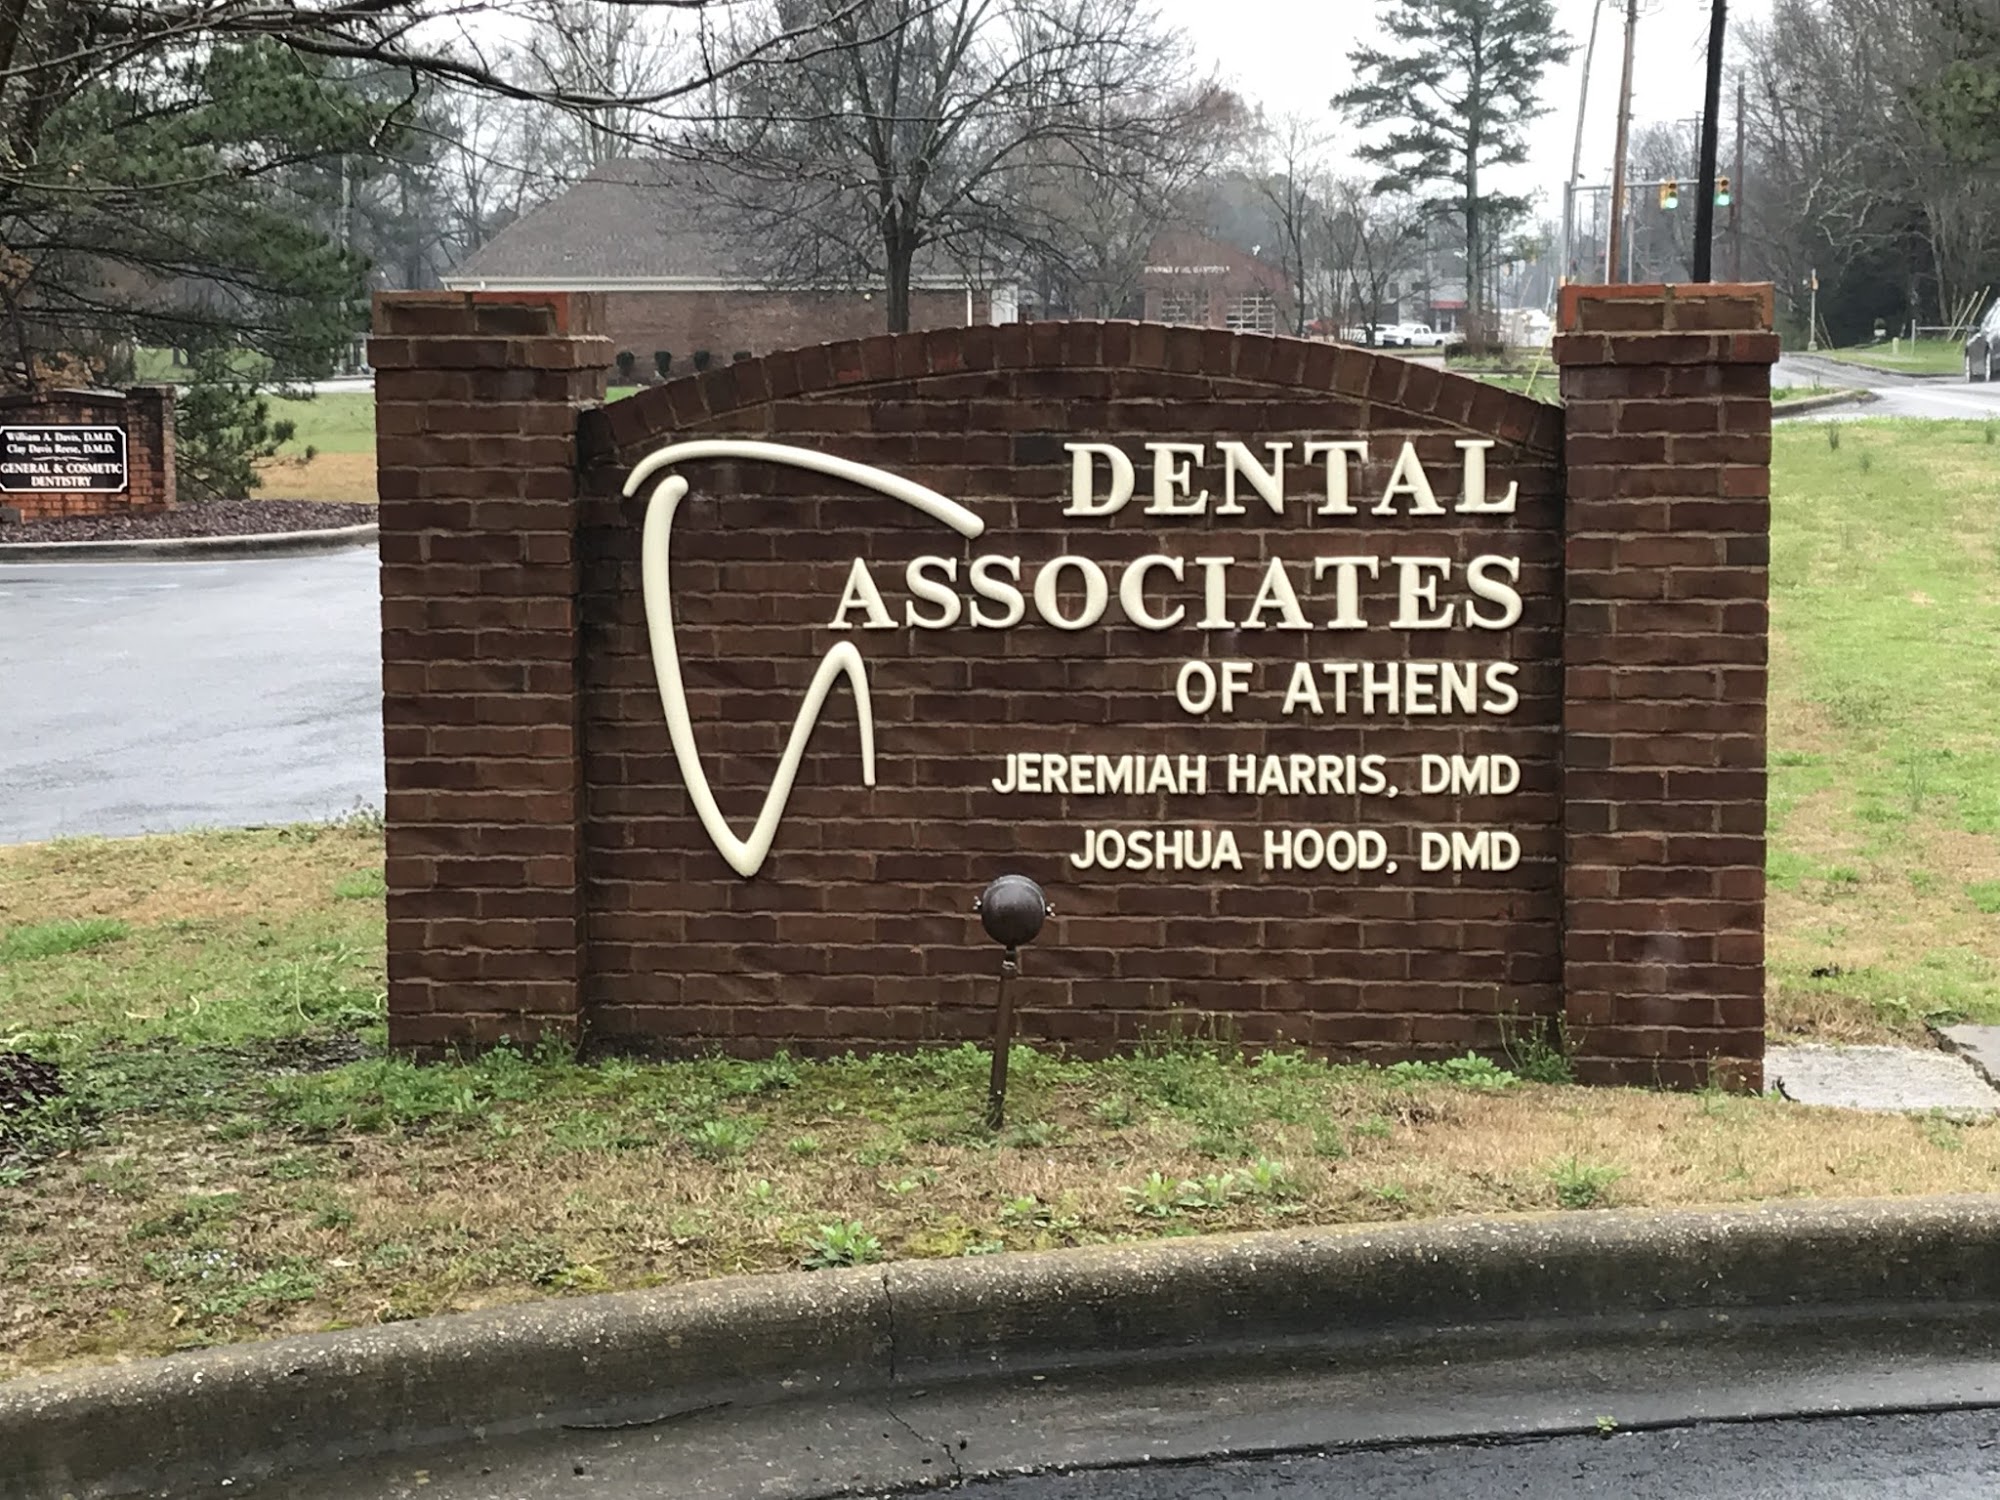 Dental Associates of Athens